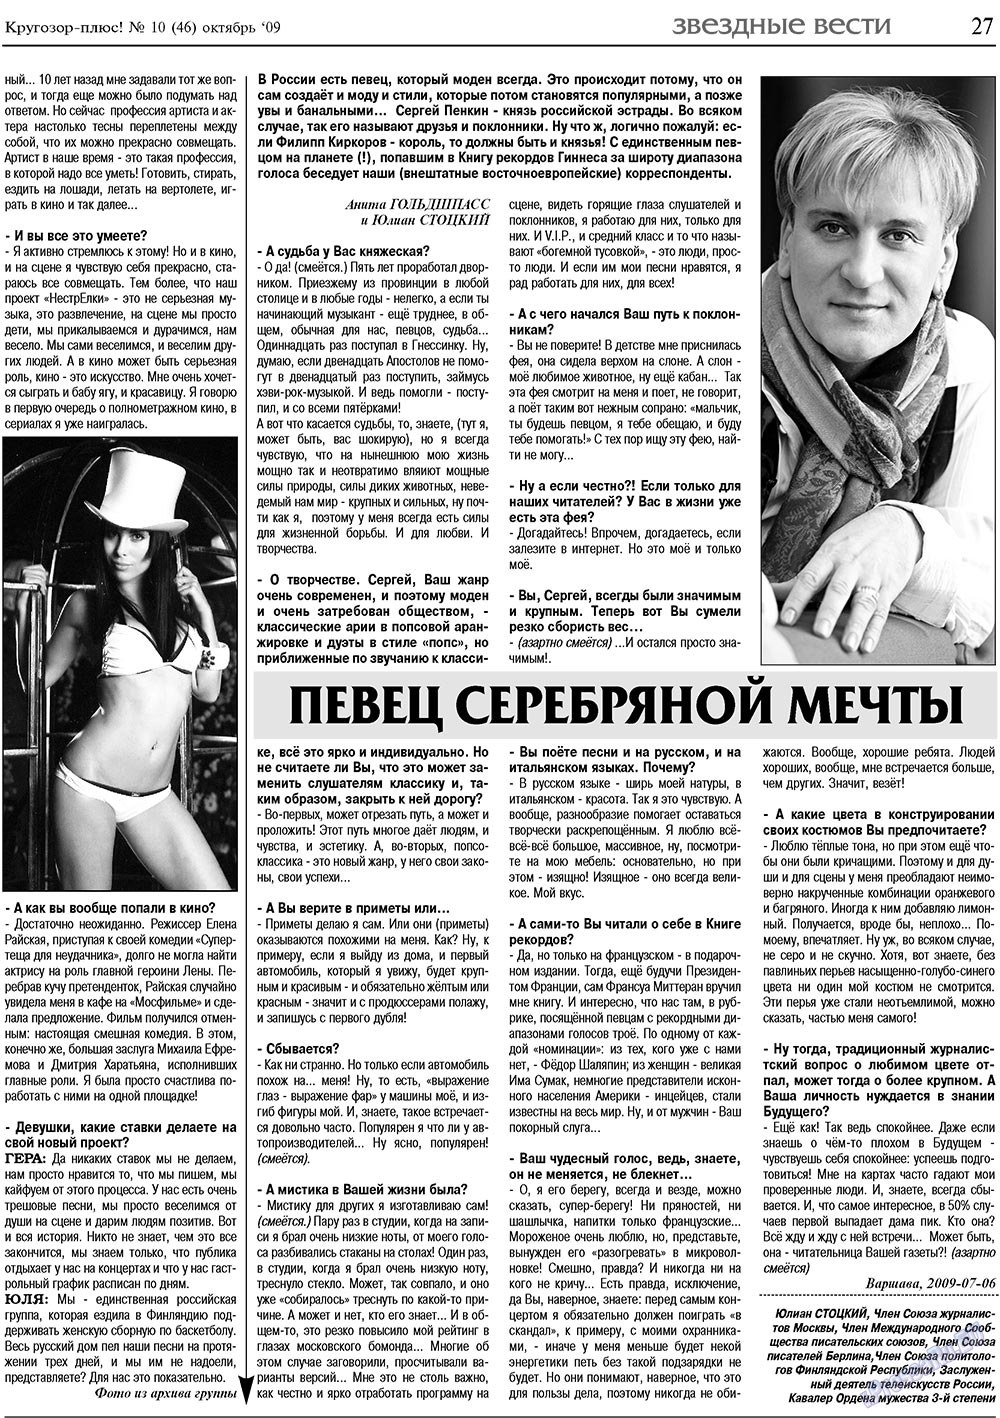 Кругозор плюс!, газета. 2009 №10 стр.27